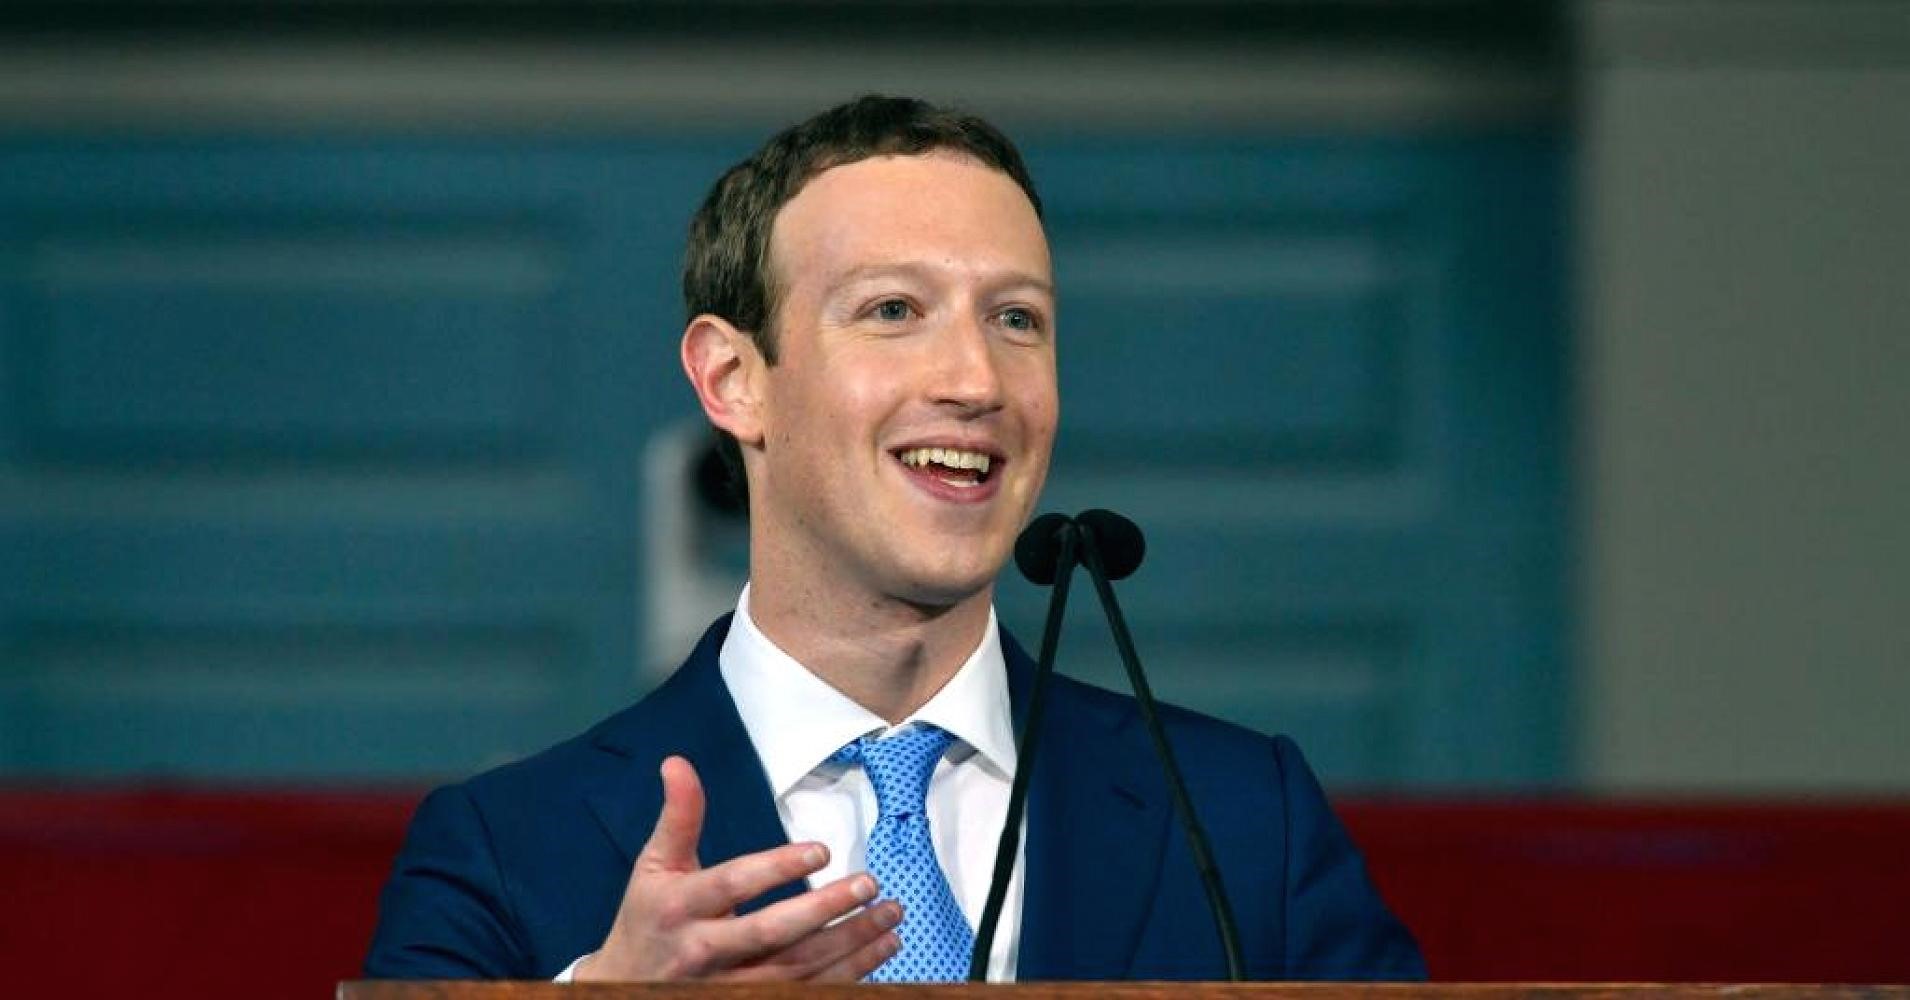 Tỉ phú 35 tuổi hiện nắm 17% cổ phần của Facebook. Trong 5 tỉ phú giàu nhất, tài sản của Mark Zuckerberg có tốc độ tăng nhanh nhất. Chỉ 5 tháng qua, tài sản của ông nhảy vọt từ 61 tỉ USD lên 77,8 tỉ USD (tăng 16,8 tỉ USD). Ảnh: ST